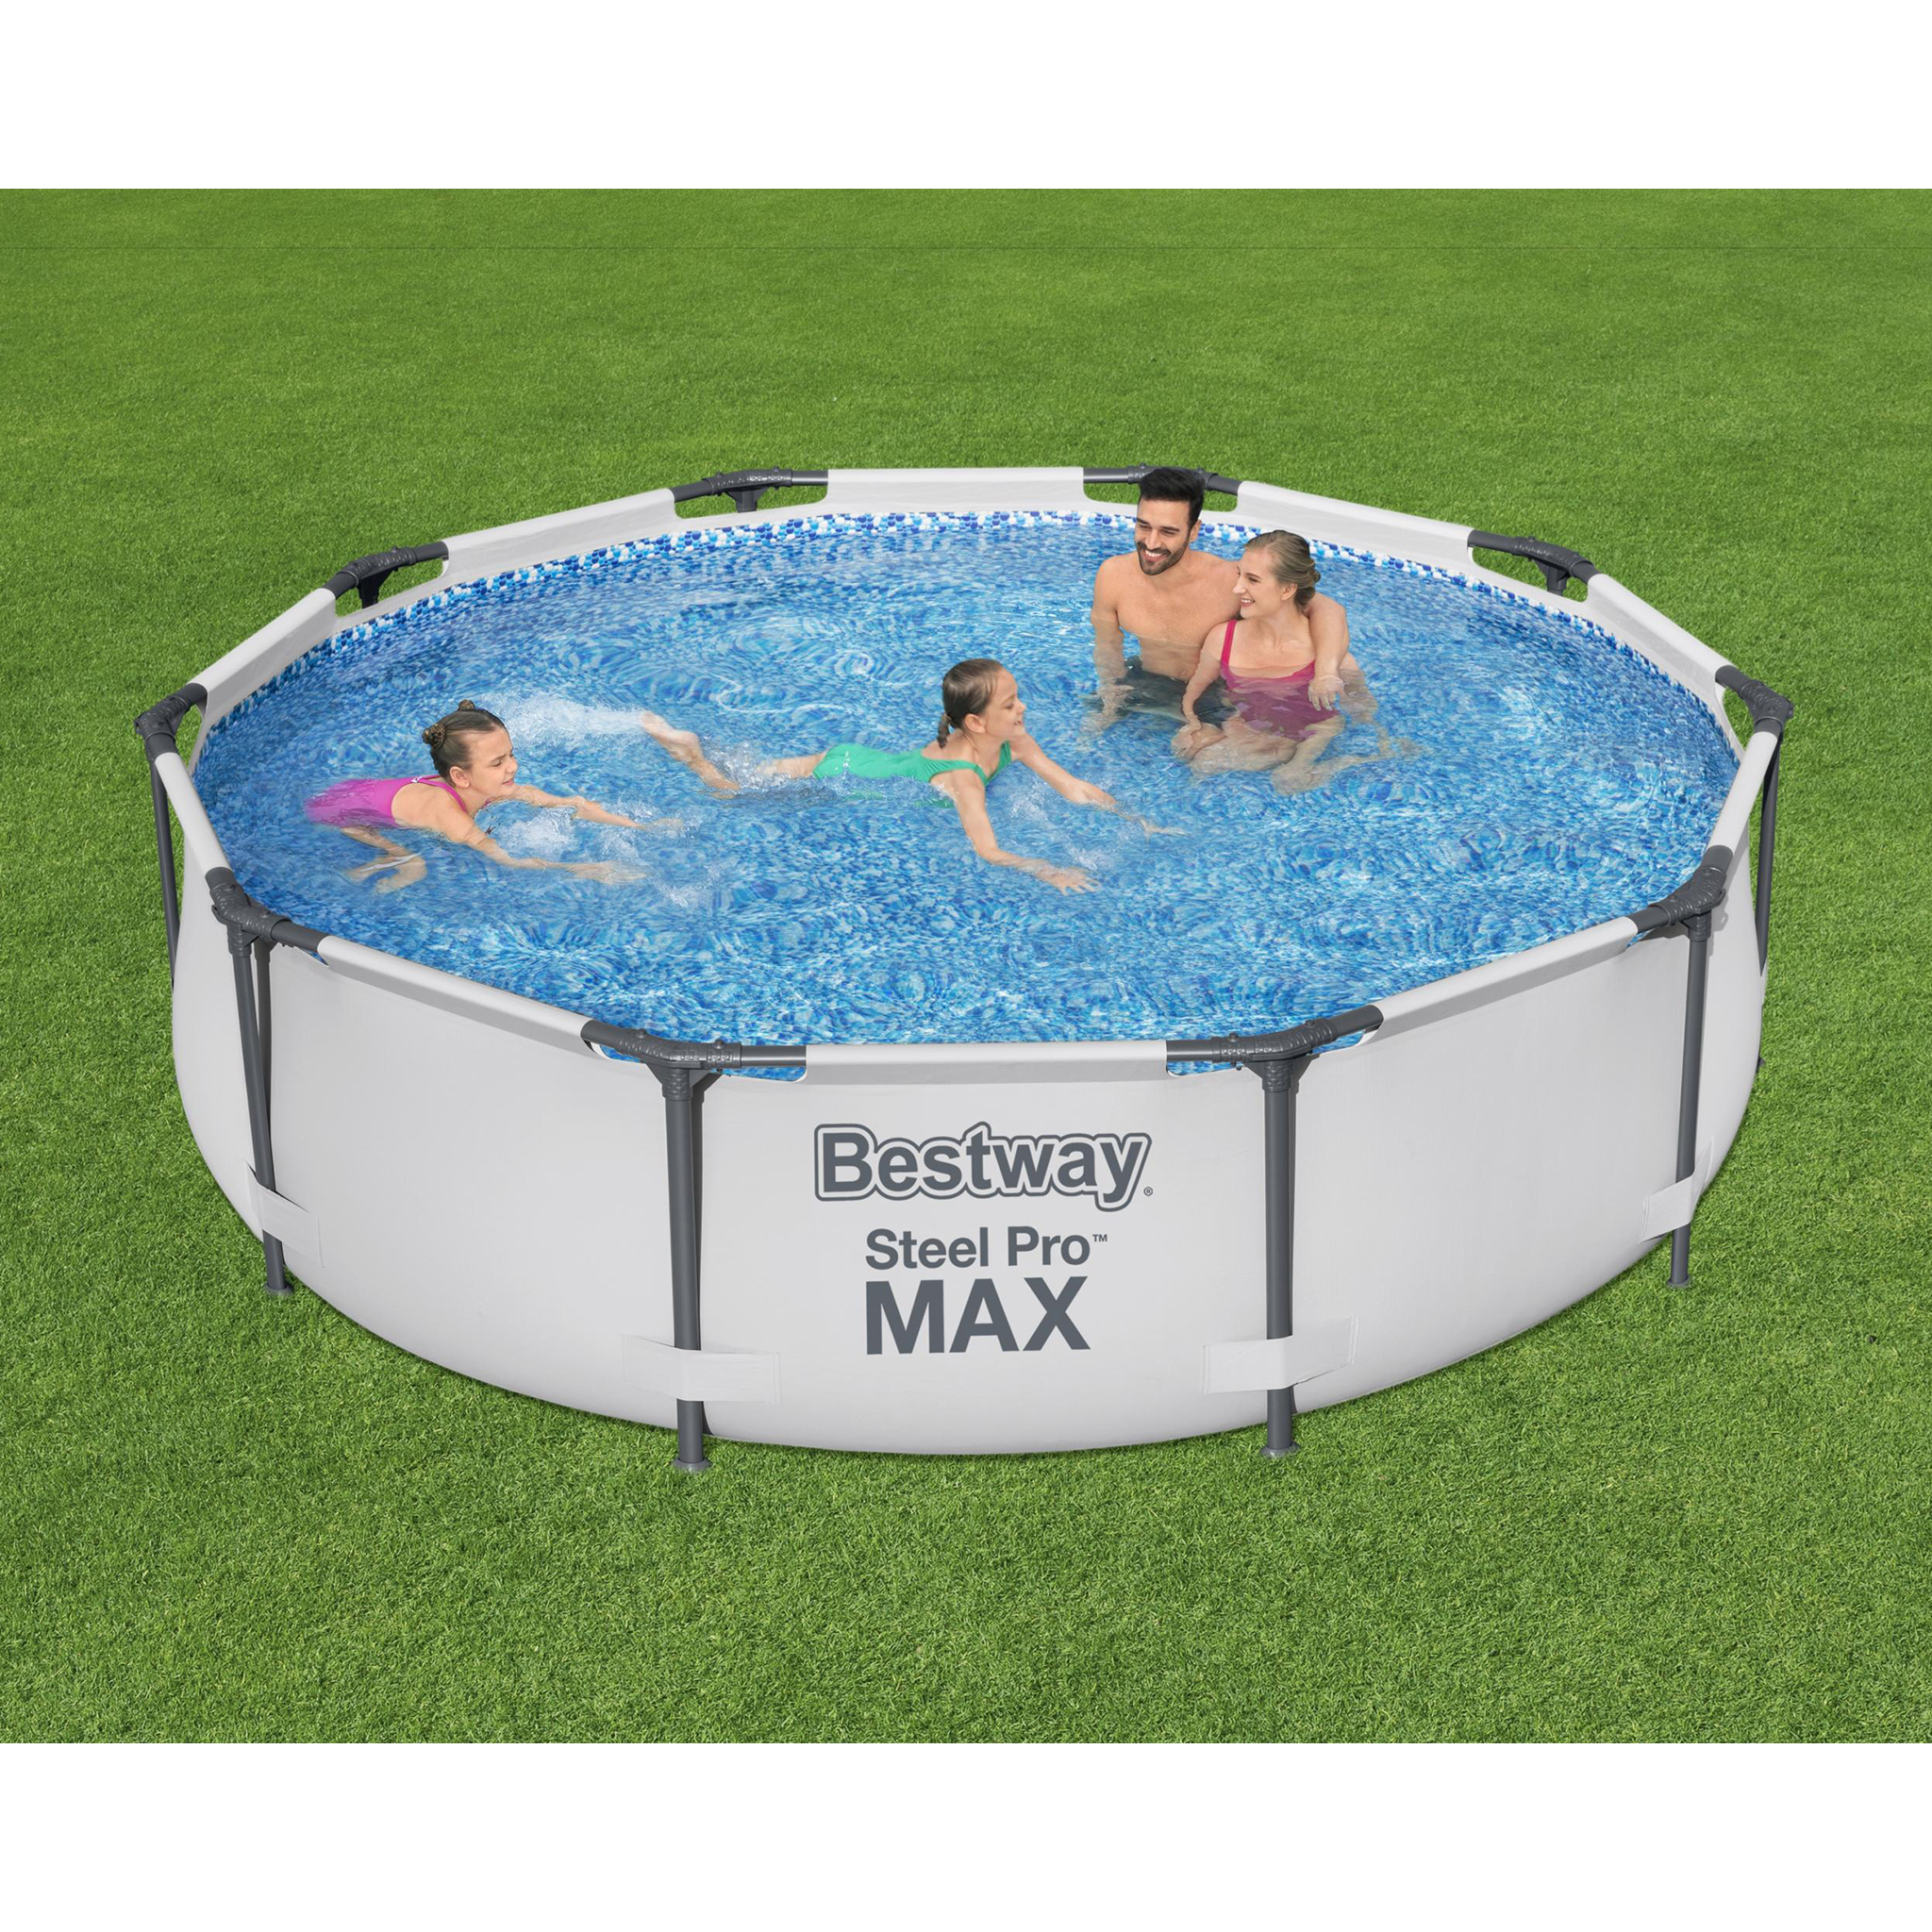 Bestway pool ovan mark Ø3m - 76cm djup | Steel Pro MAX (56406)